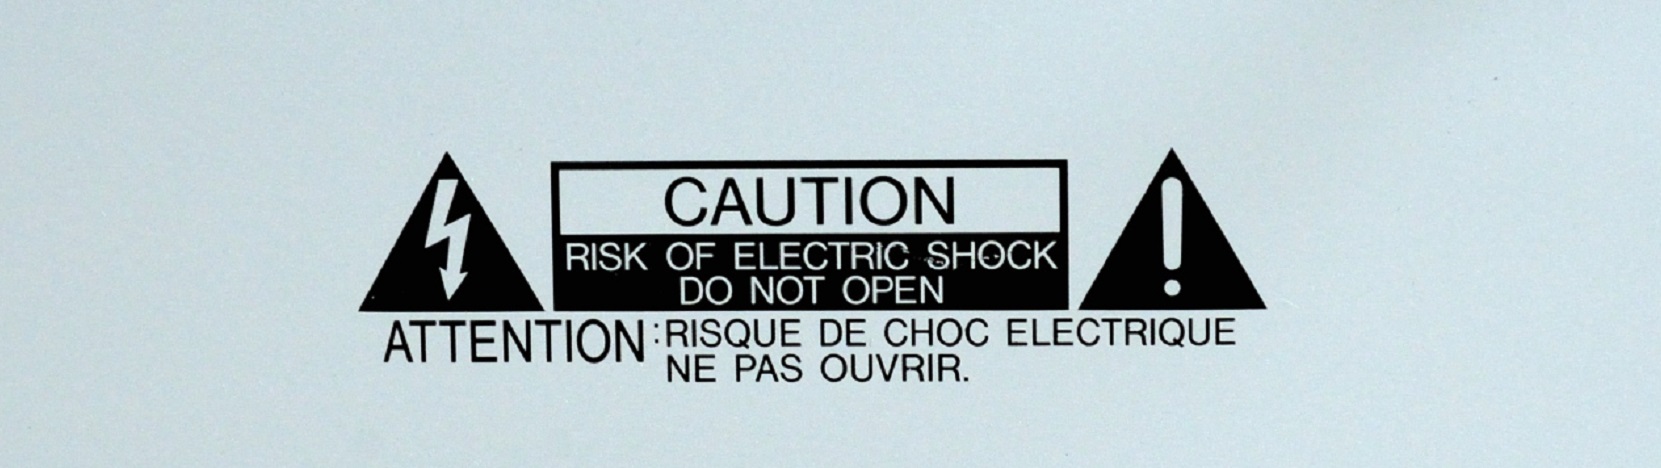 Un apparecchio elettrico su nove risulta difettoso – Electrosuisse